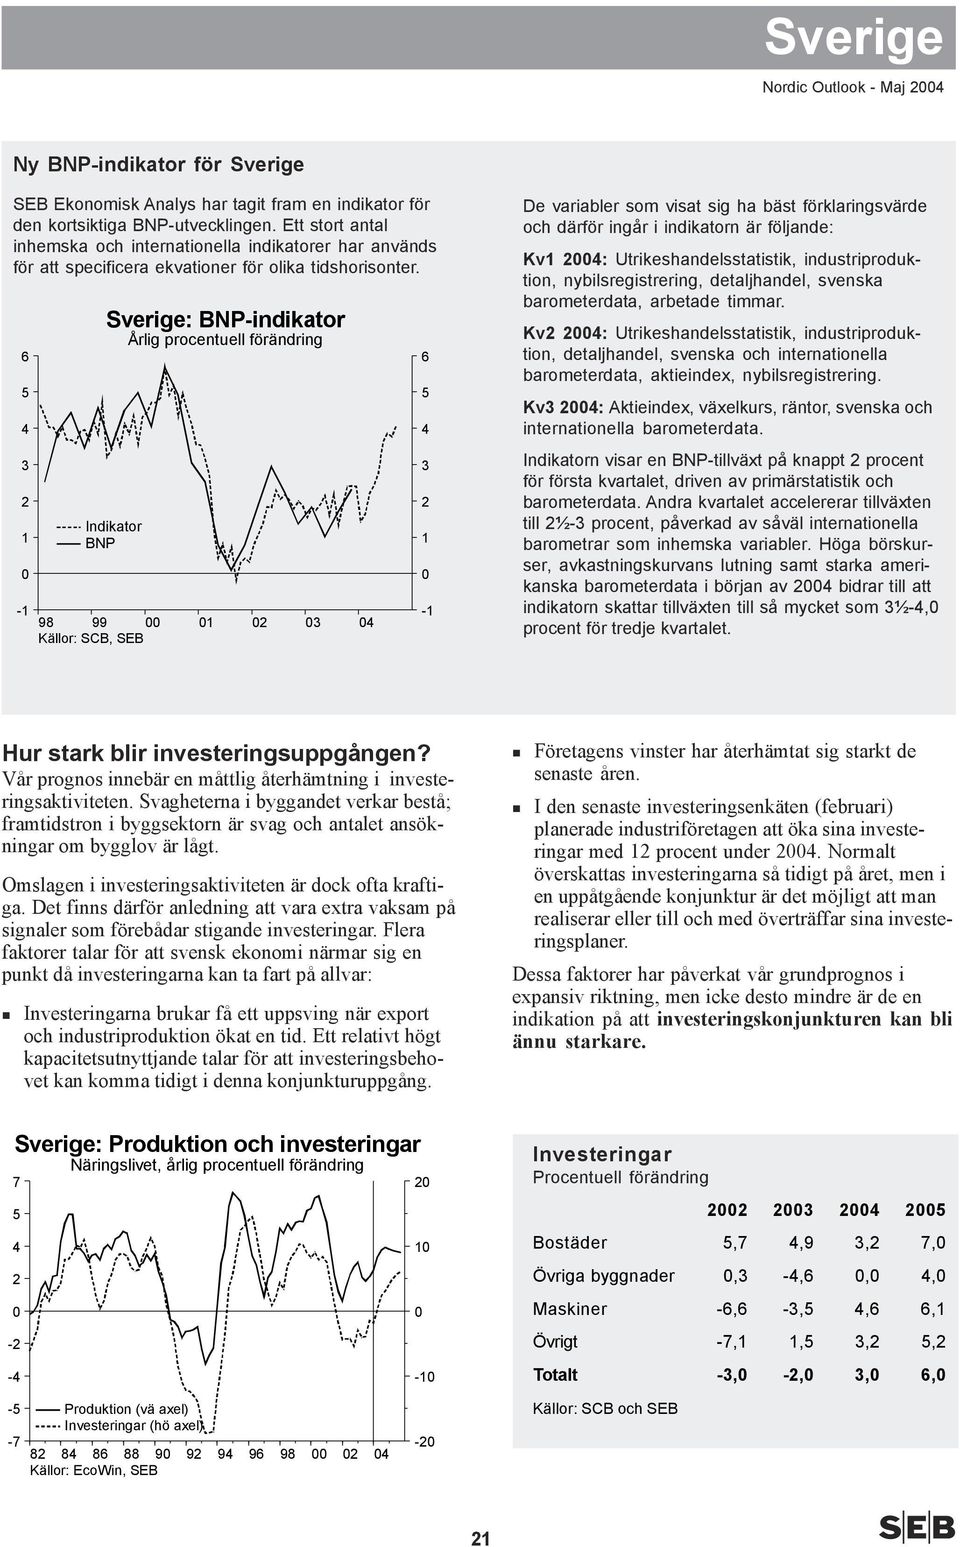 - 98 99 Källor: SCB, SEB Sverige: BNP-indikator Indikator BNP - De variabler som visat sig ha bäst förklaringsvärde och därför ingår i indikatorn är följande: Kv : Utrikeshandelsstatistik,